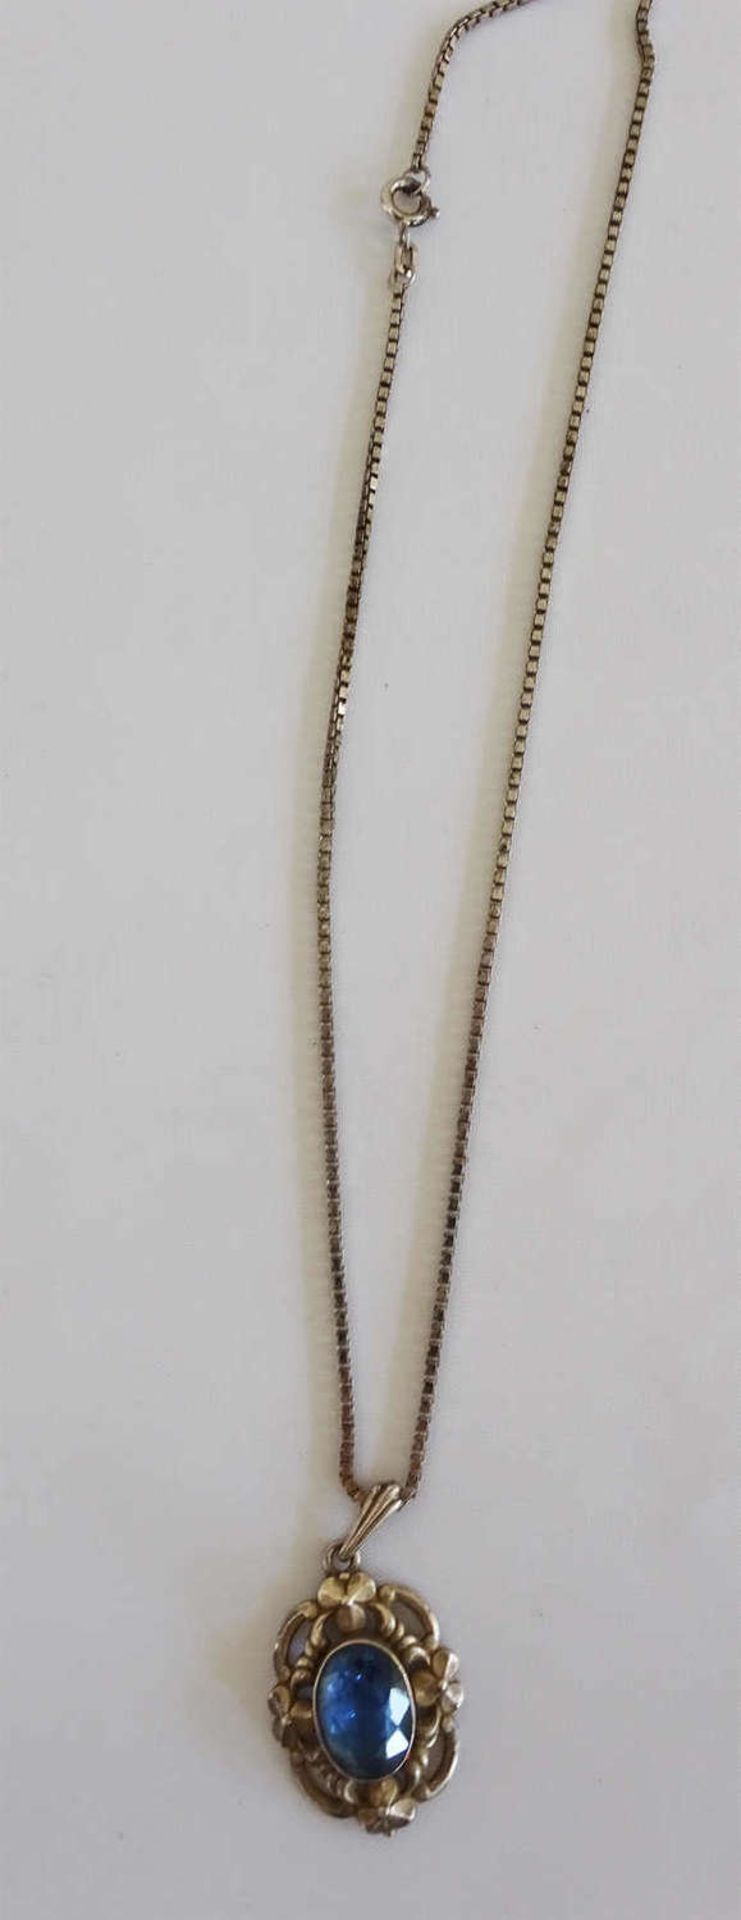 1 Silberkette mit Anhänger, dieser besetzt mit Blautopas, wohl 30er Jahre.1 silver necklace with - Bild 2 aus 2